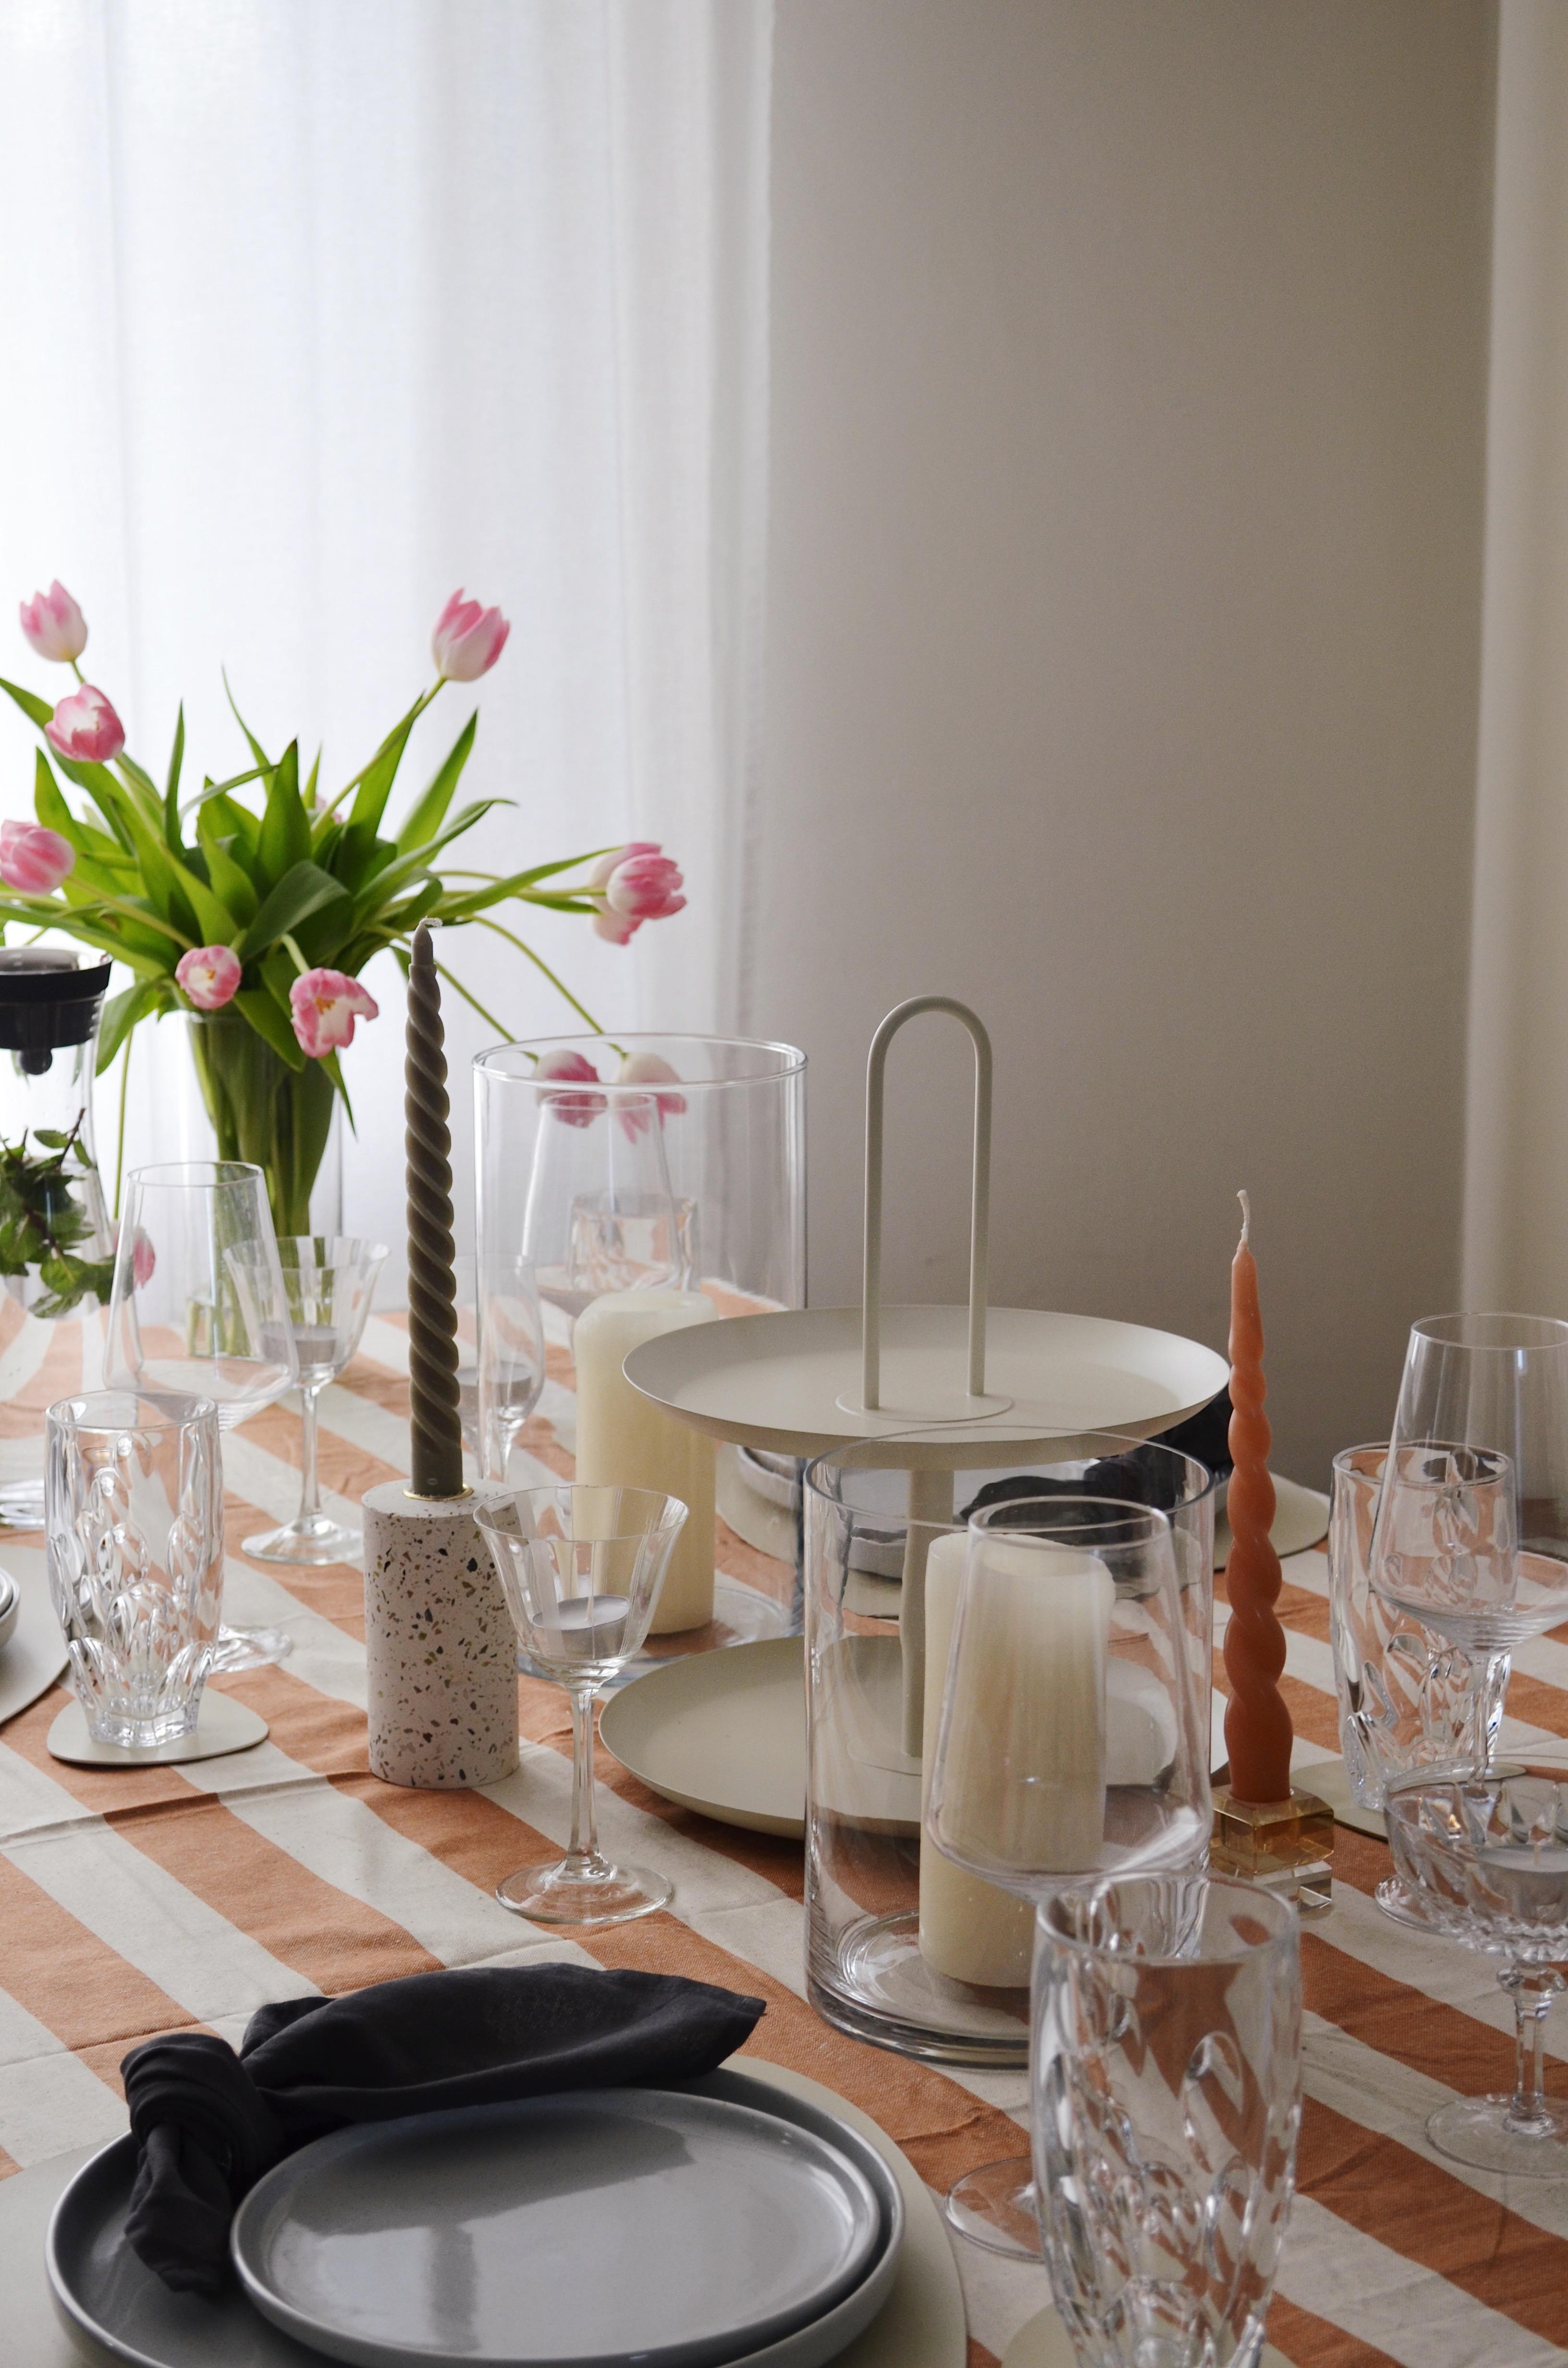 Tischlein Deck’ dich 🤍
#couchliebt#tablesetting#dinner#dinnertable#aufgetischt#livingroom#home#interior#kitchendesign